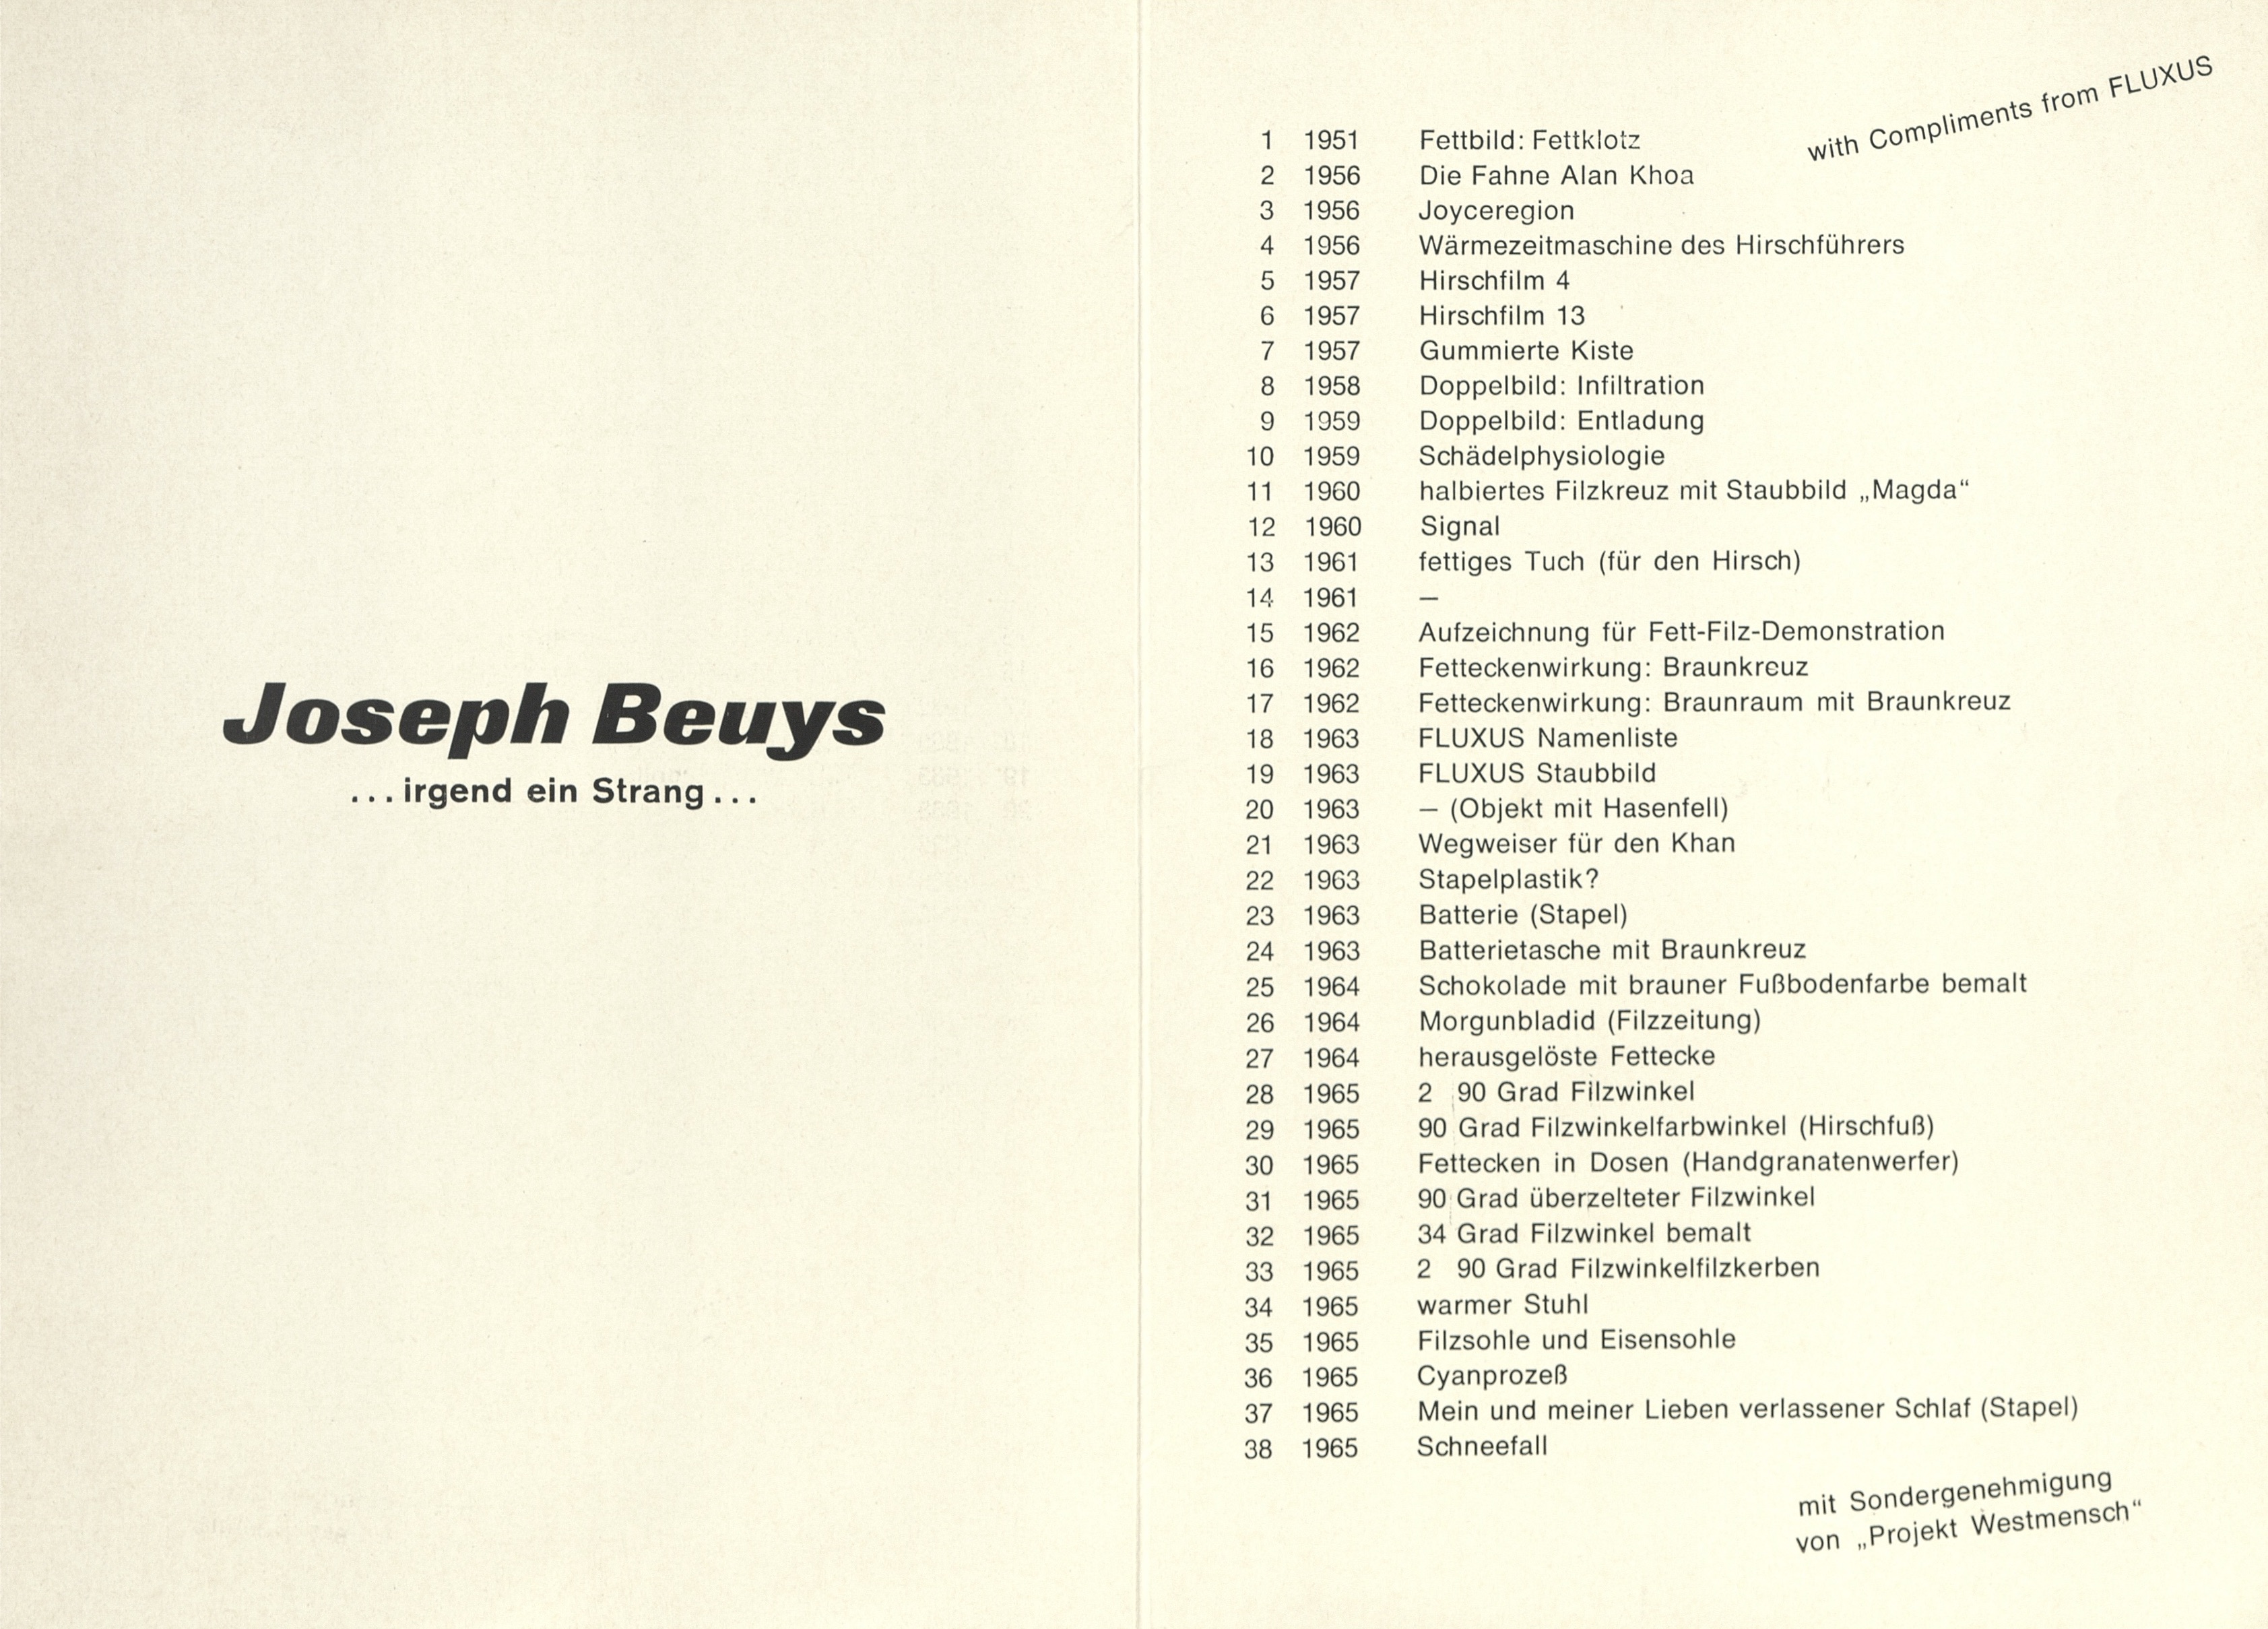 Joseph Beuys, Galerie Schmela, Düsseldorf, 1965 (Invitation);  Archiv der Avantgarden, Staatliche Kunstsammlungen Dresden © VG Bild-Kunst, Bonn